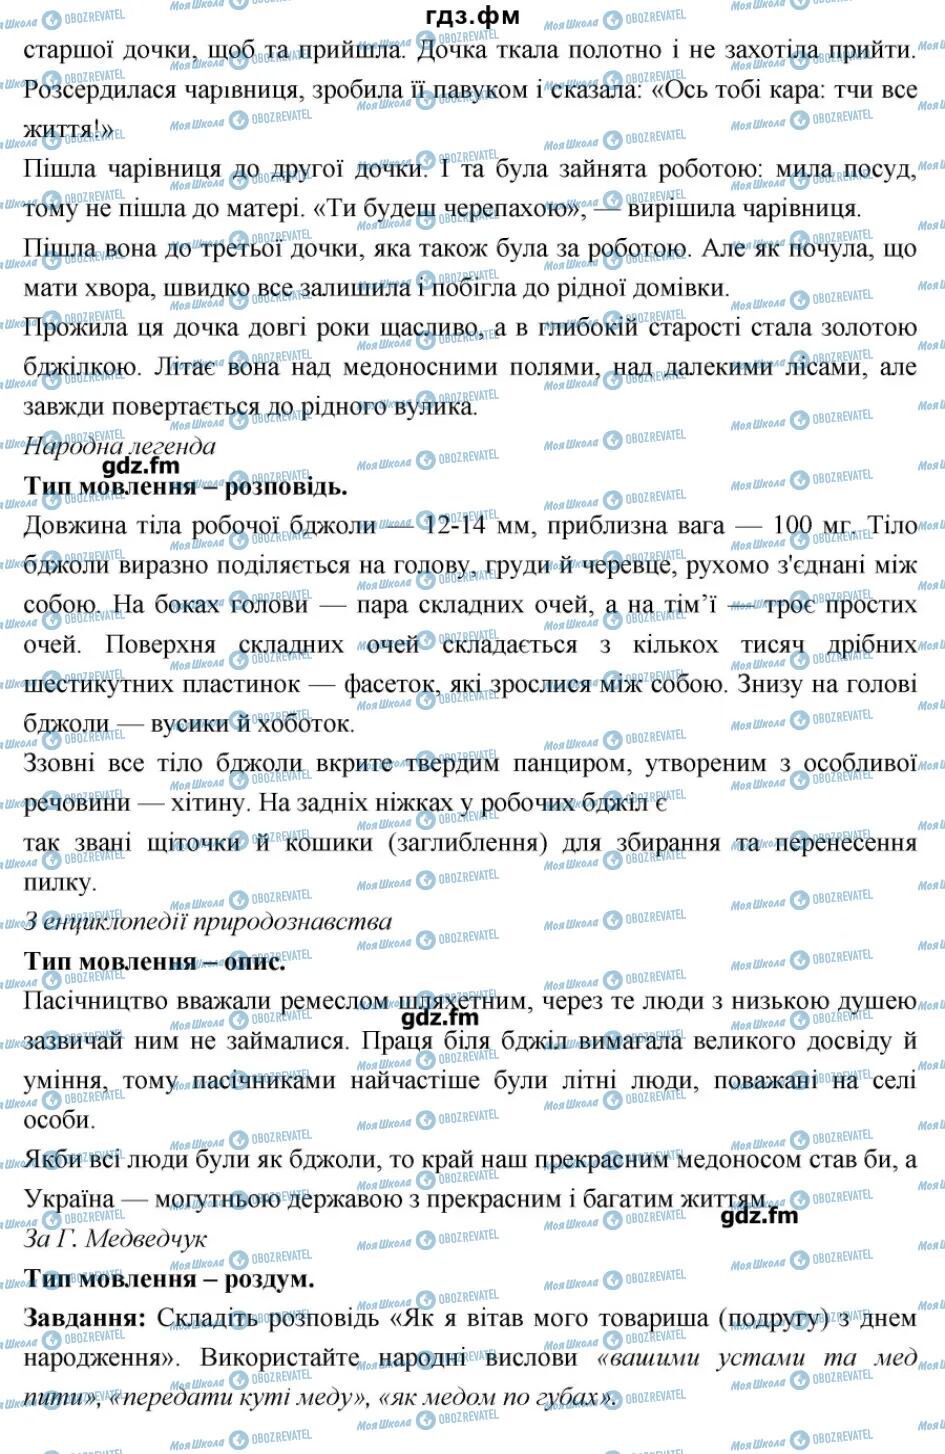 ГДЗ Українська мова 6 клас сторінка 47